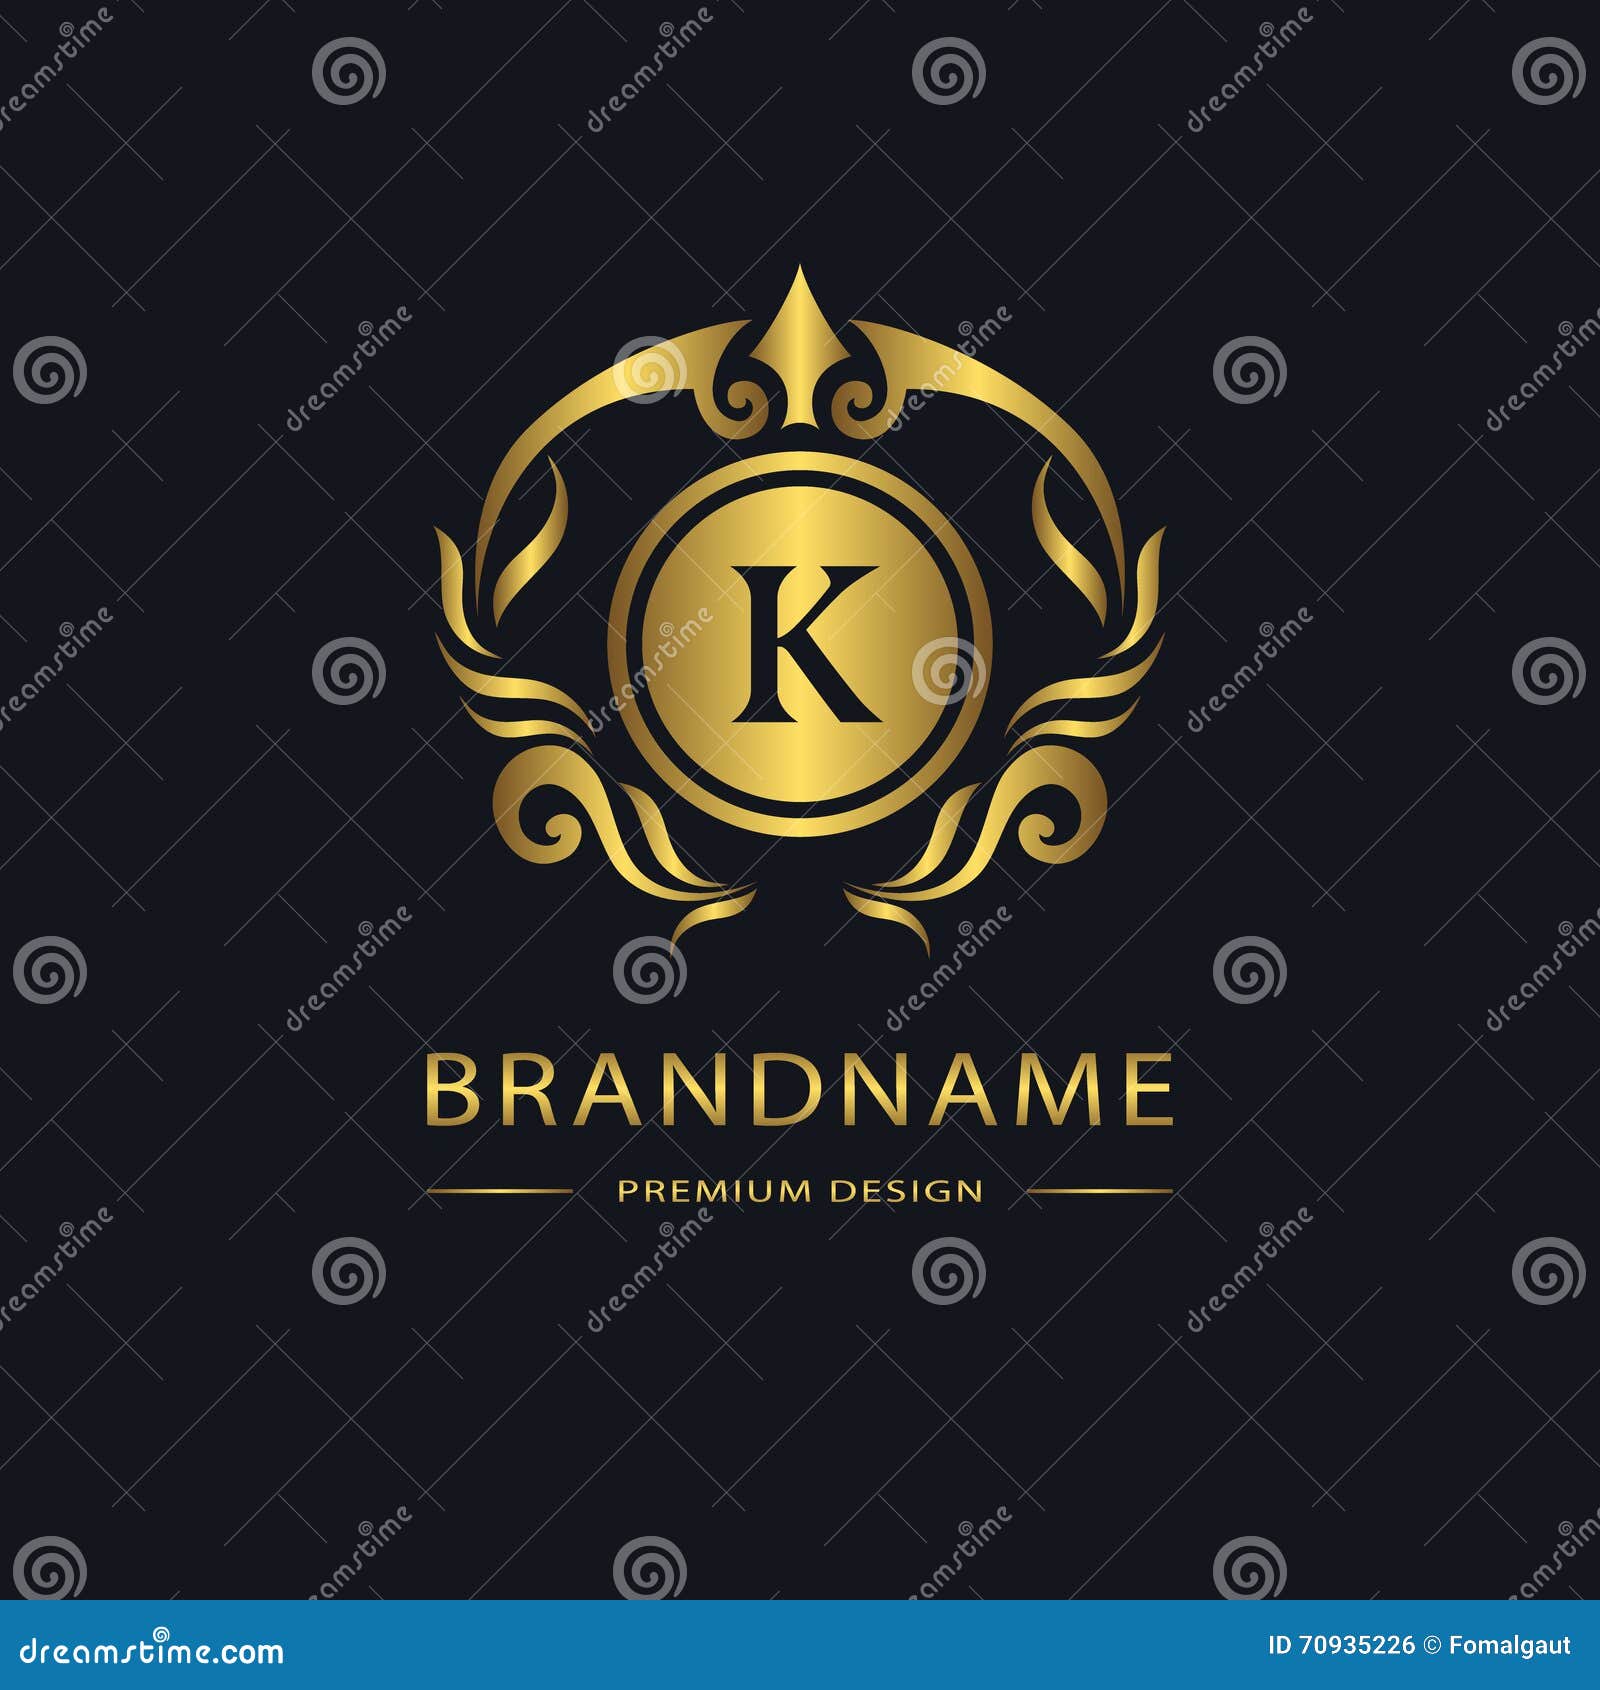 luxury vintage logo. business sign, label. gold letter emblem k for badge, crest, restaurant, royalty, boutique brand, hotel,